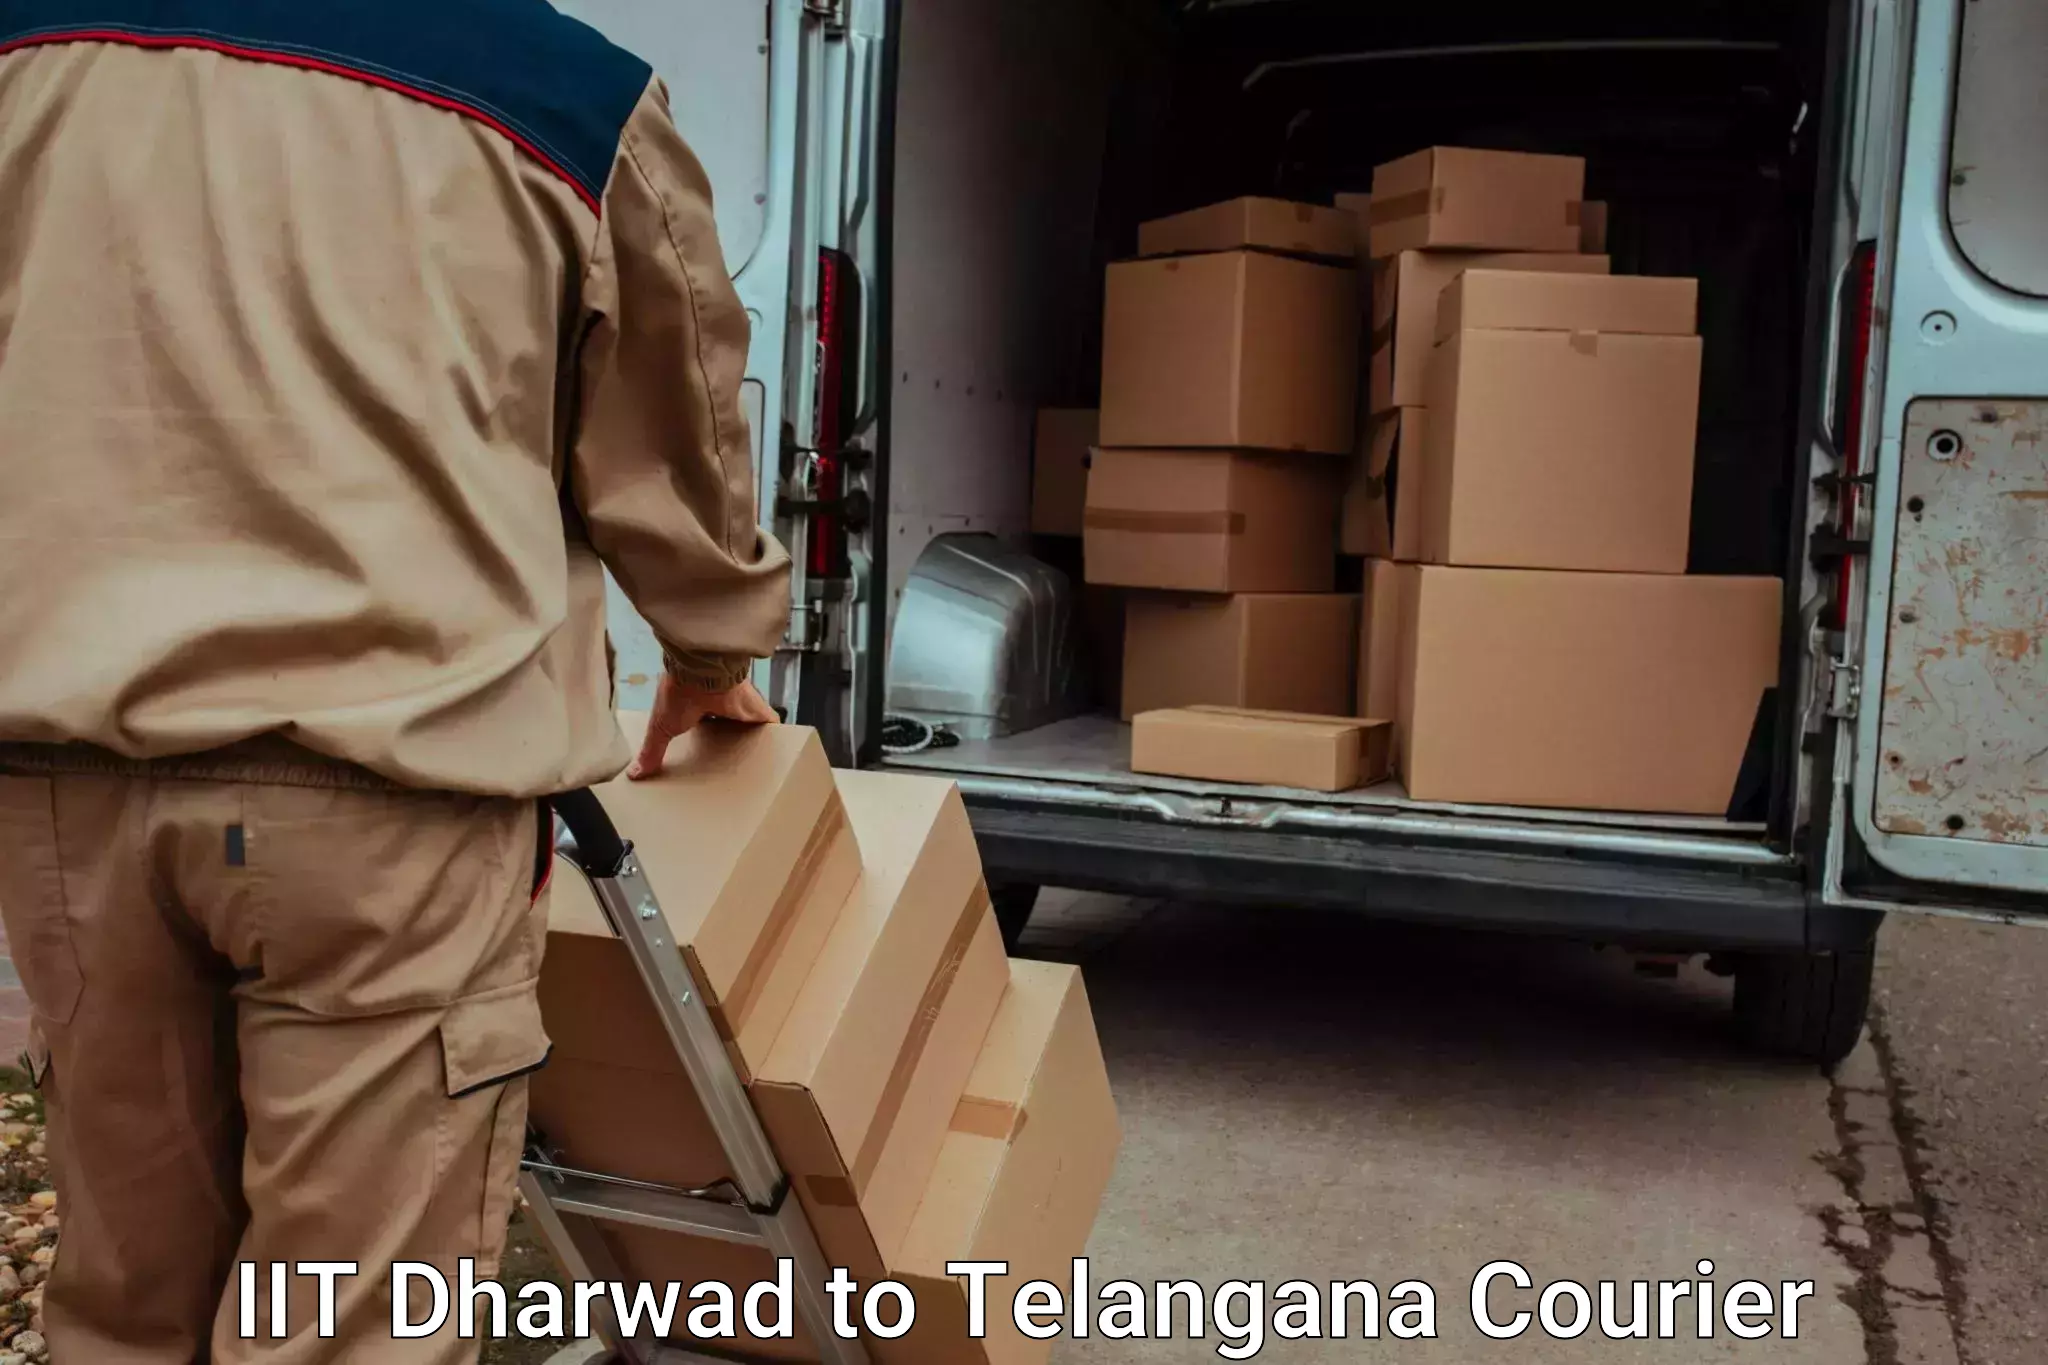 Express luggage delivery IIT Dharwad to Kodad